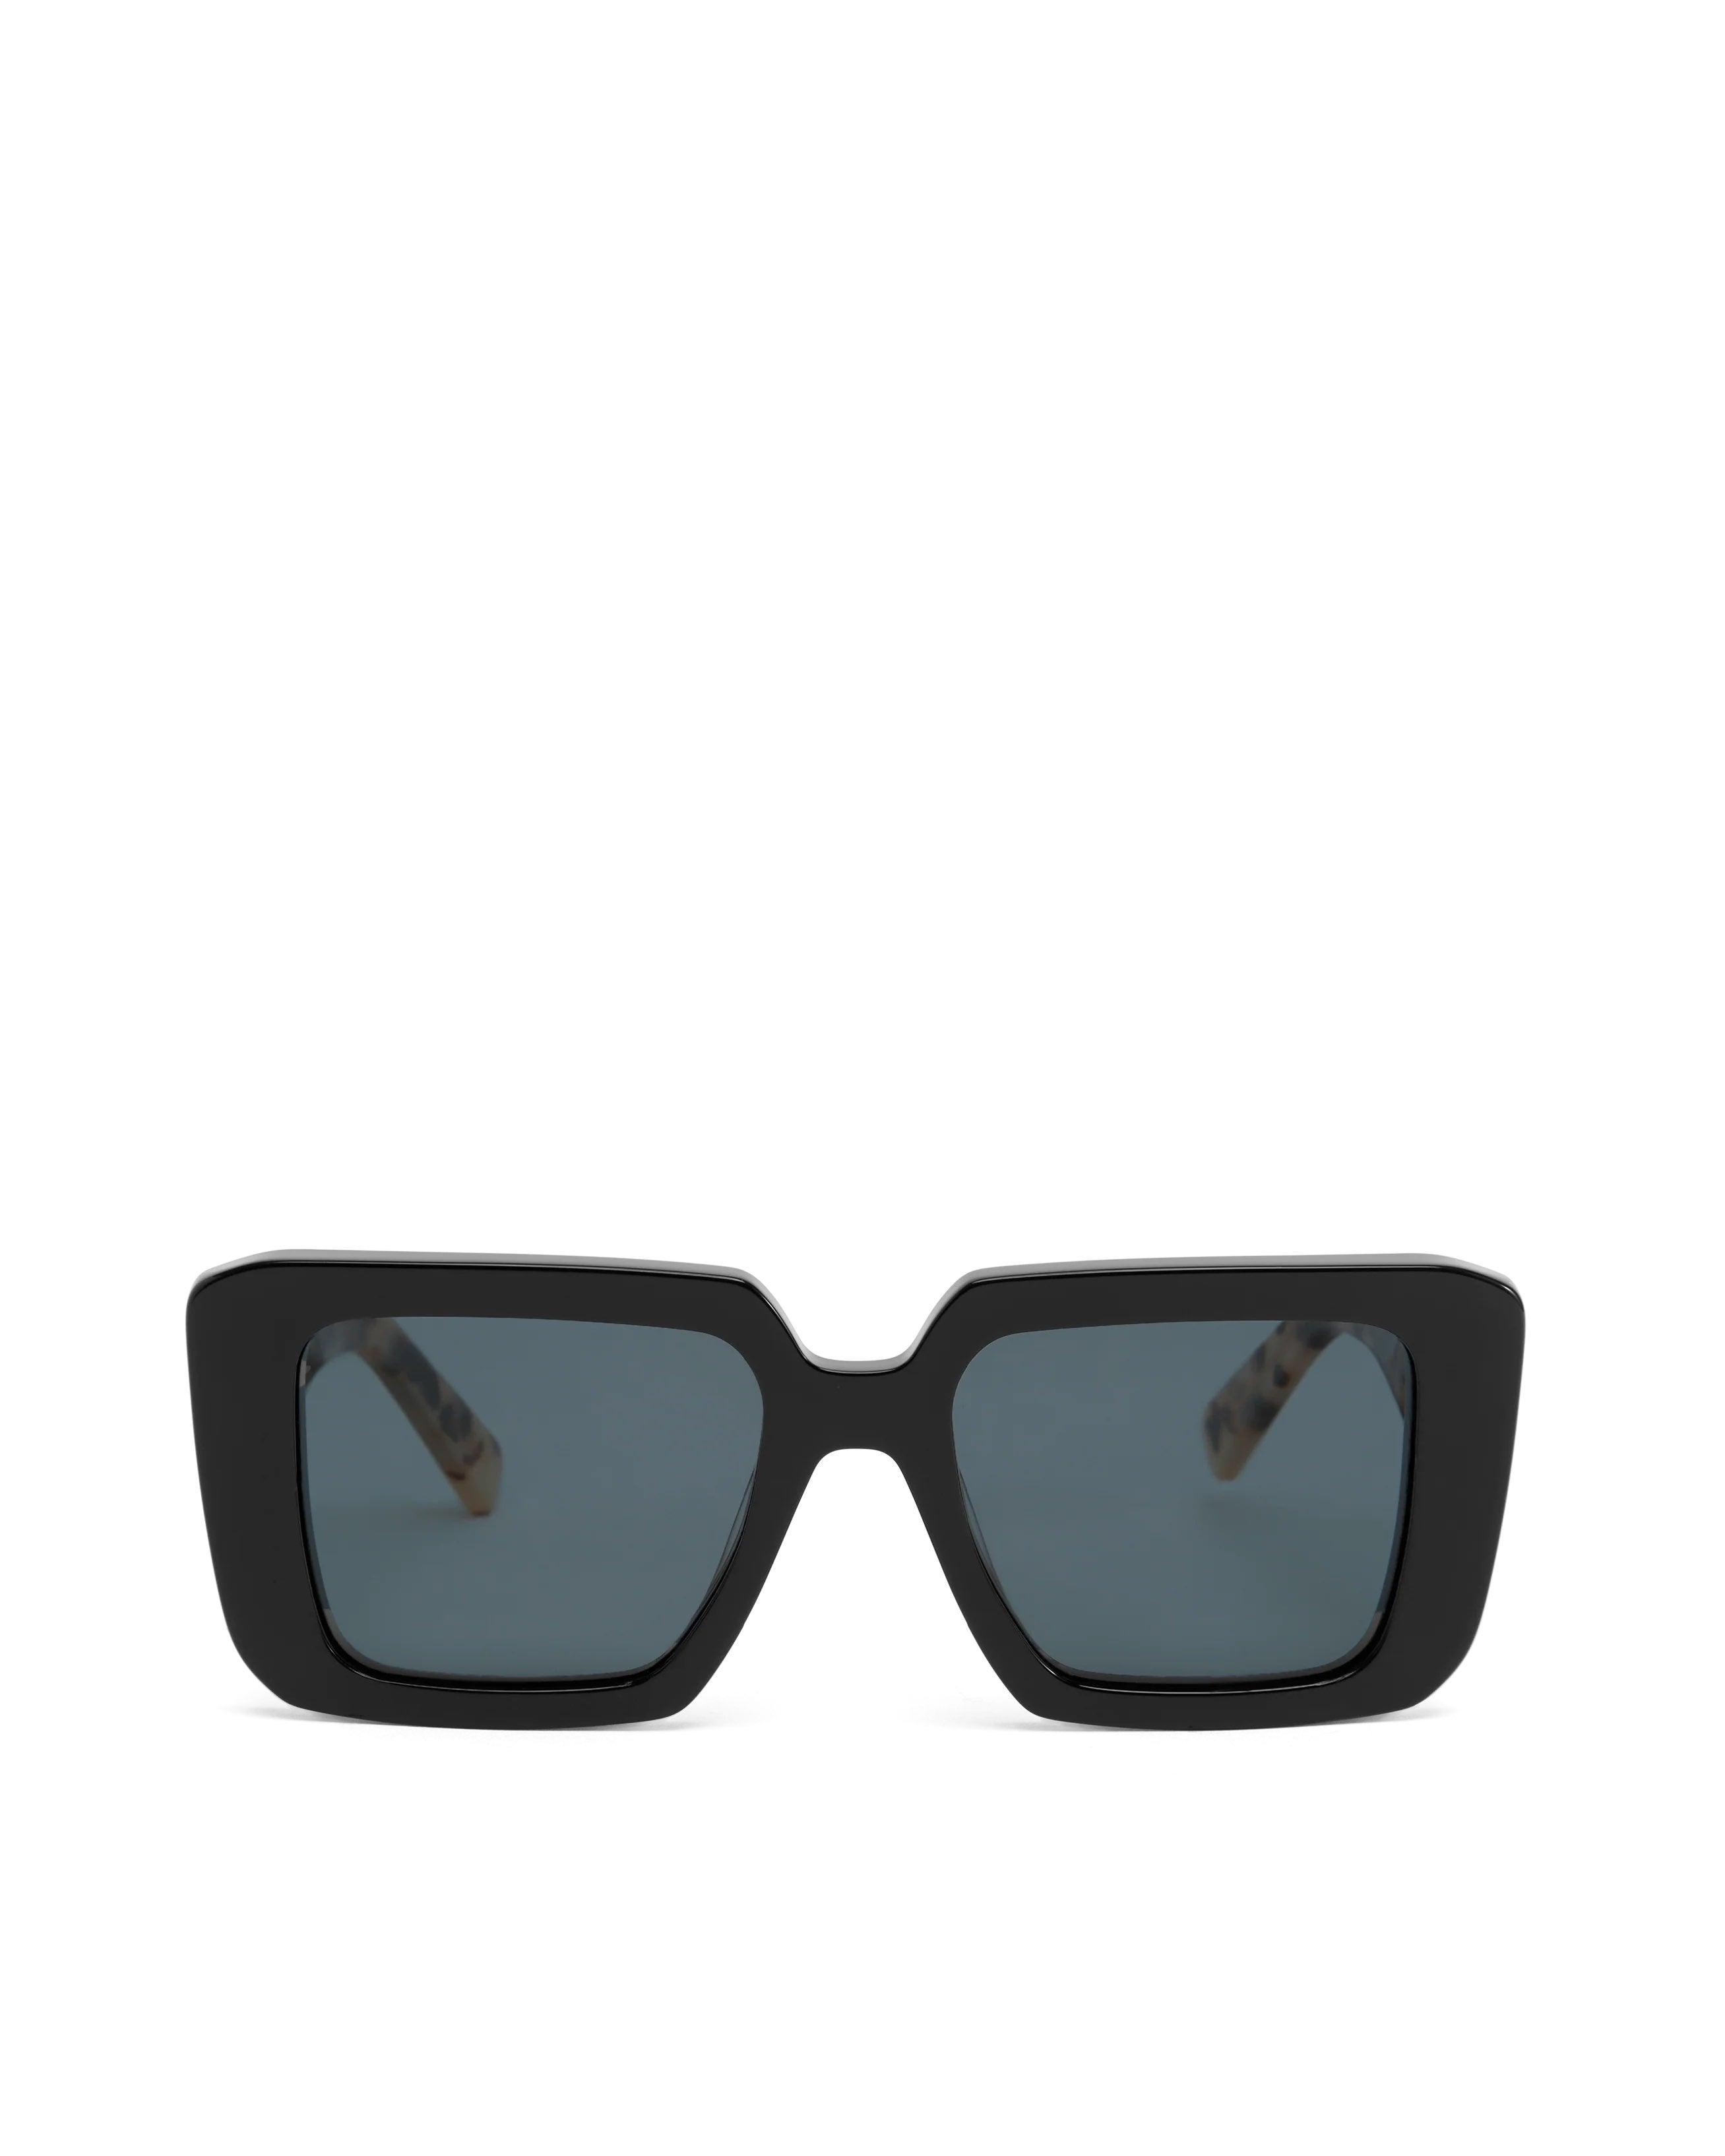 The Marisa Sunglasses - Black/Blonde Tortoise - Flutter